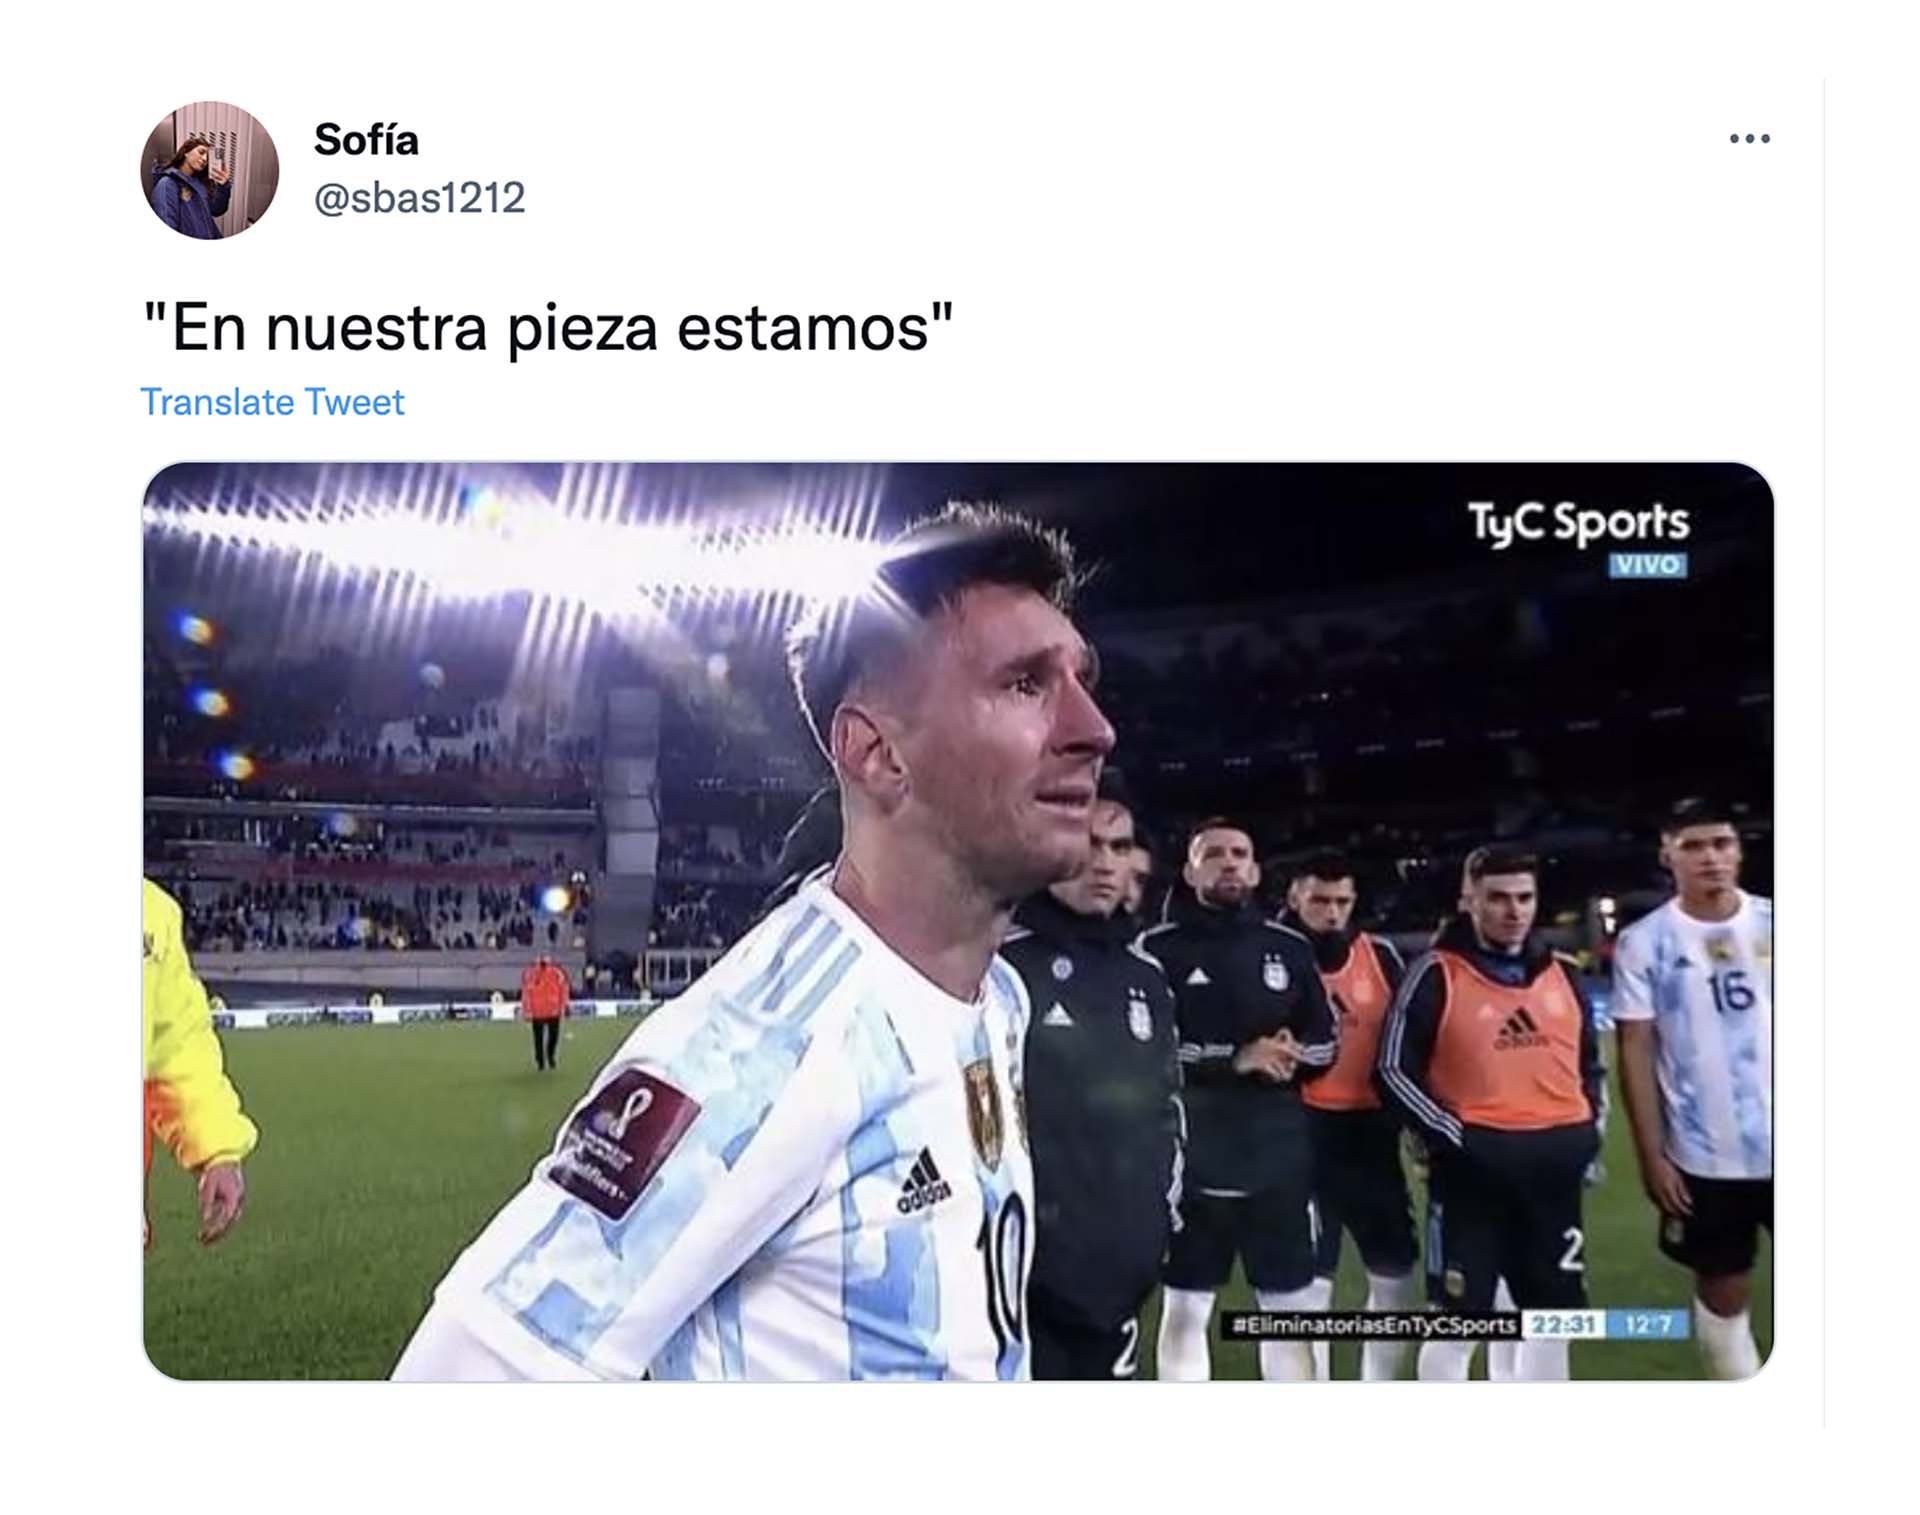 Cuando Messi le dijo al Kun "en nuestra pieza estamos", las redes sociales se llenaron de memes.